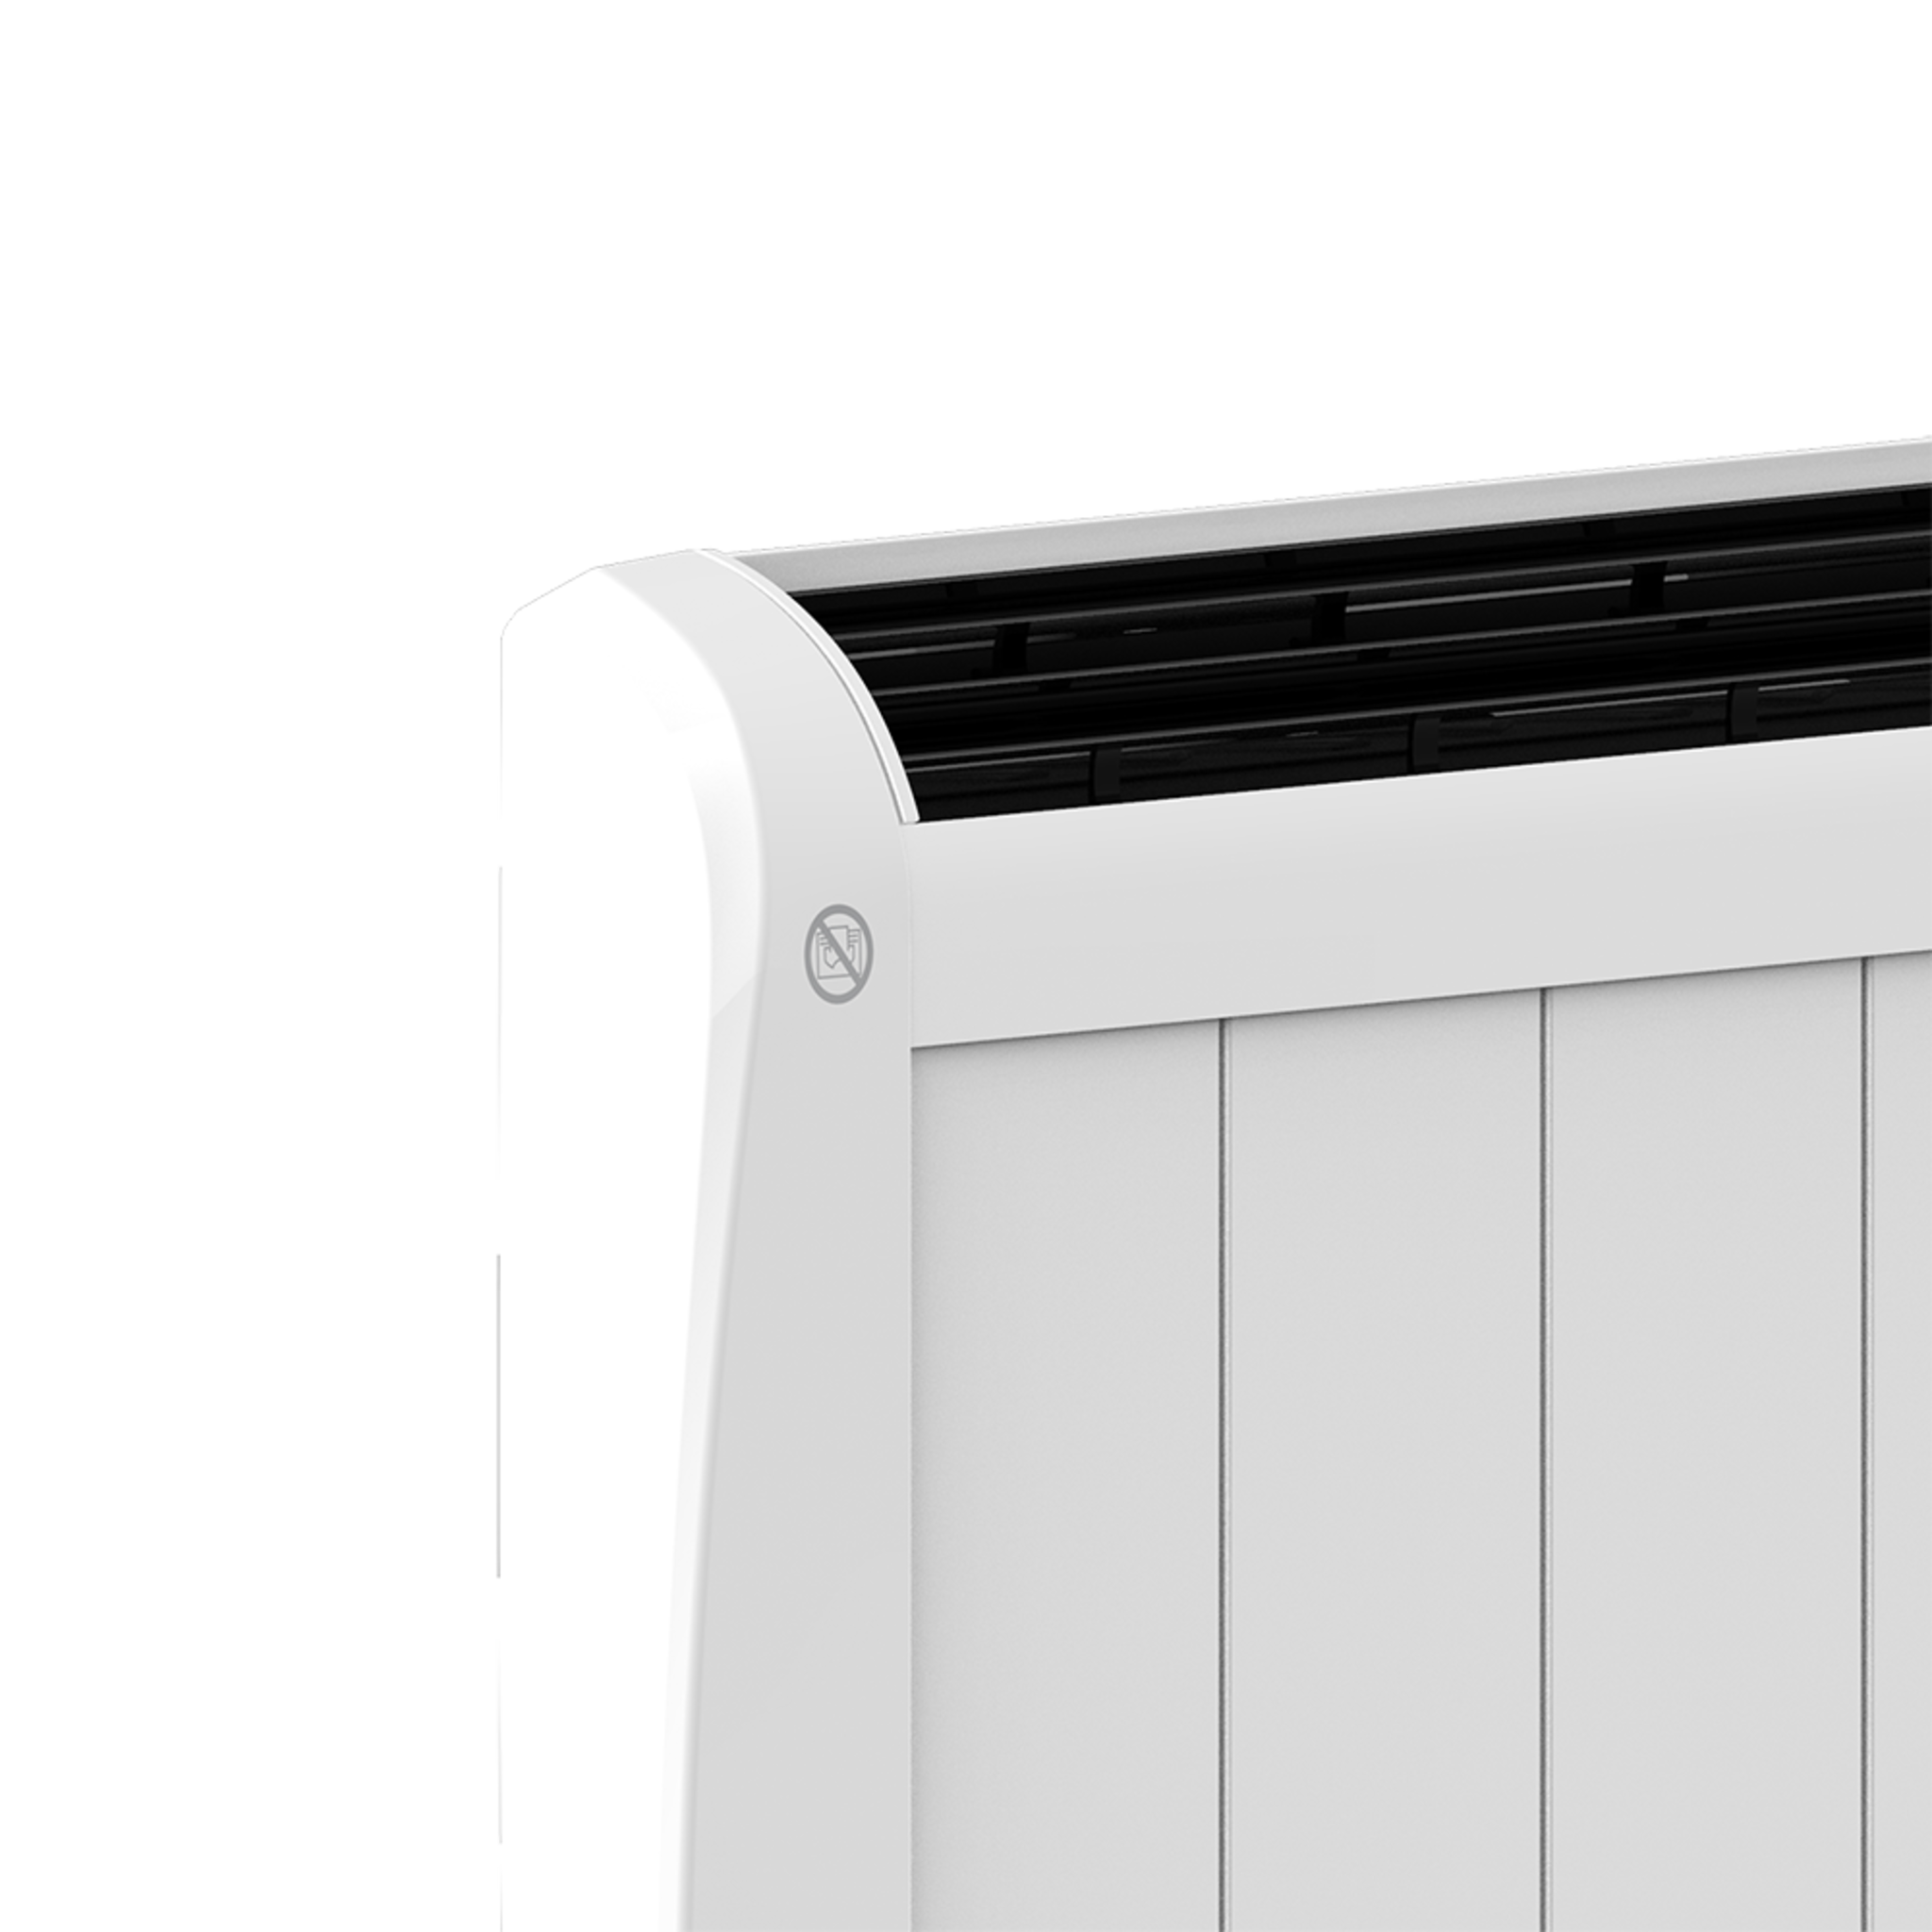 Radiateur électrique à faible consommation Ready Warm 1200 Thermal Connected. Avec 6 éléments, 900 W, mural ou sur pied, 3 modes, minuterie, télécommande, écran LED, contrôle via Wi-Fi, ultra-fin